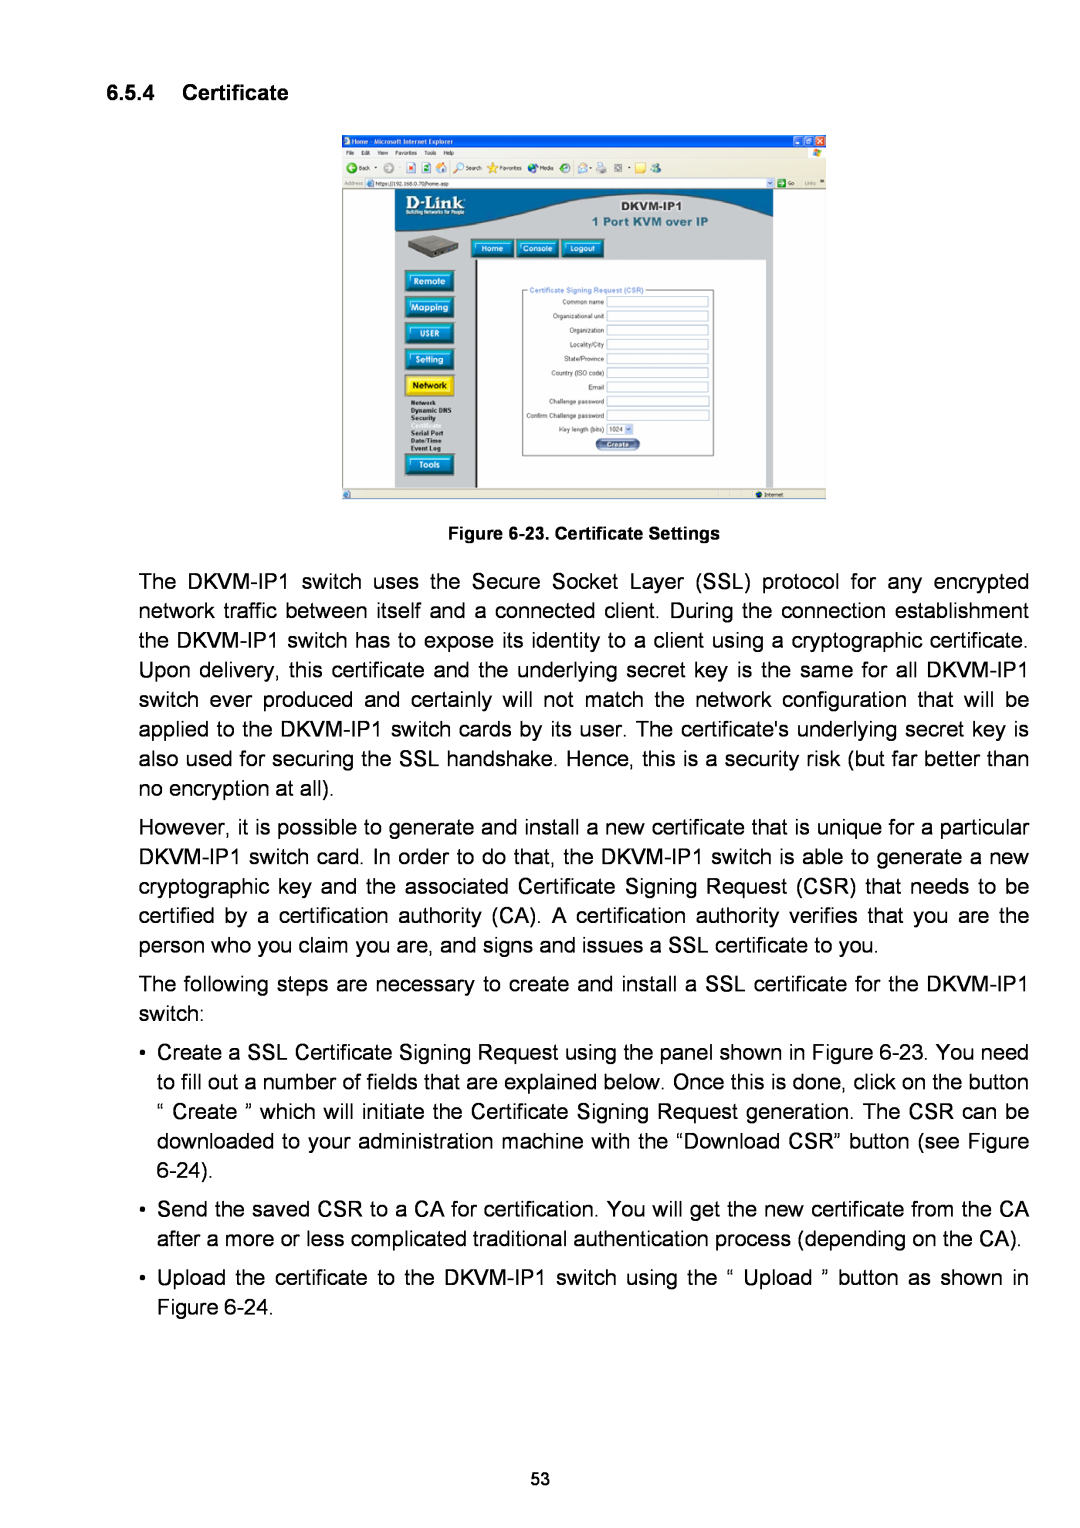 D-Link DKVM-IP1 manual 23. Certificate Settings 